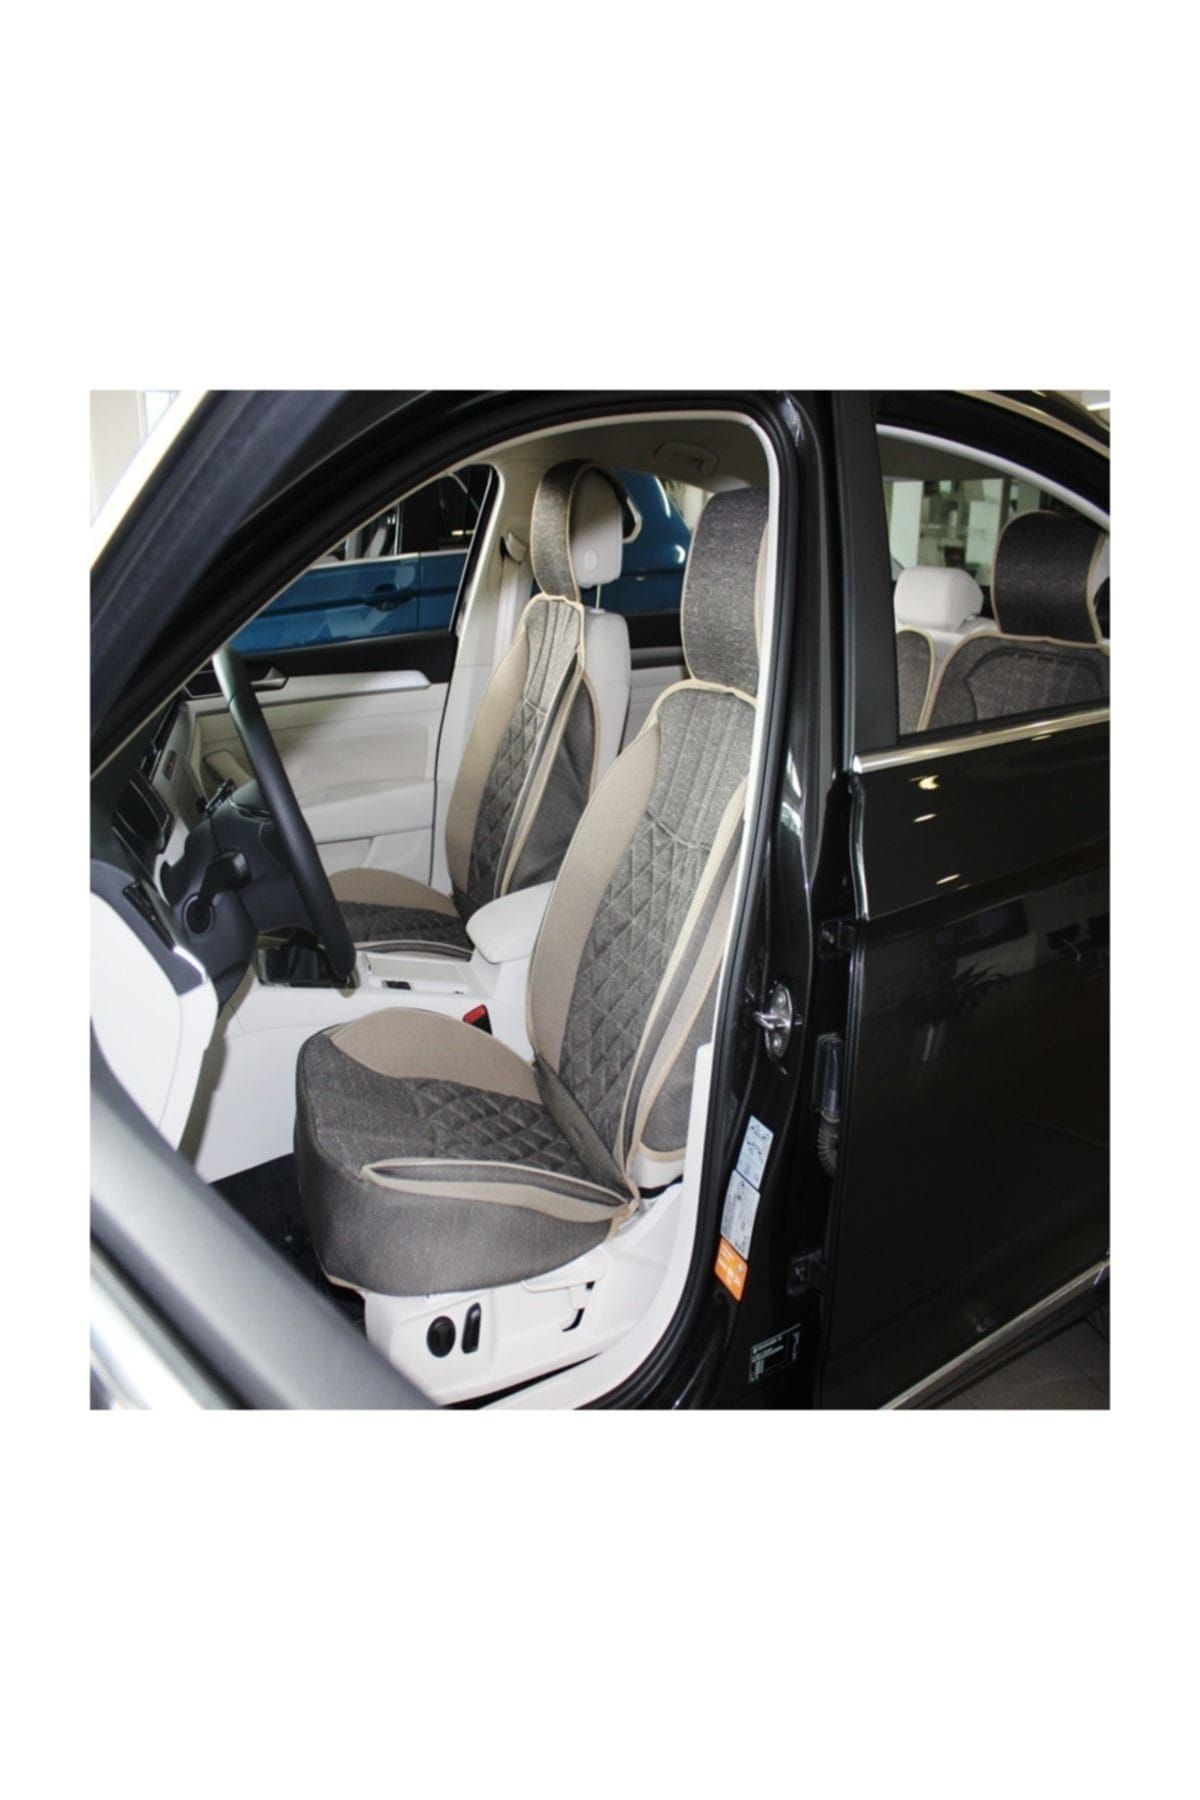 Space Daewoo Tüm Modellerine Uyumlu Senturk Auto Elegance Minder 5 li Set Ön Ön Arka Takım Gri